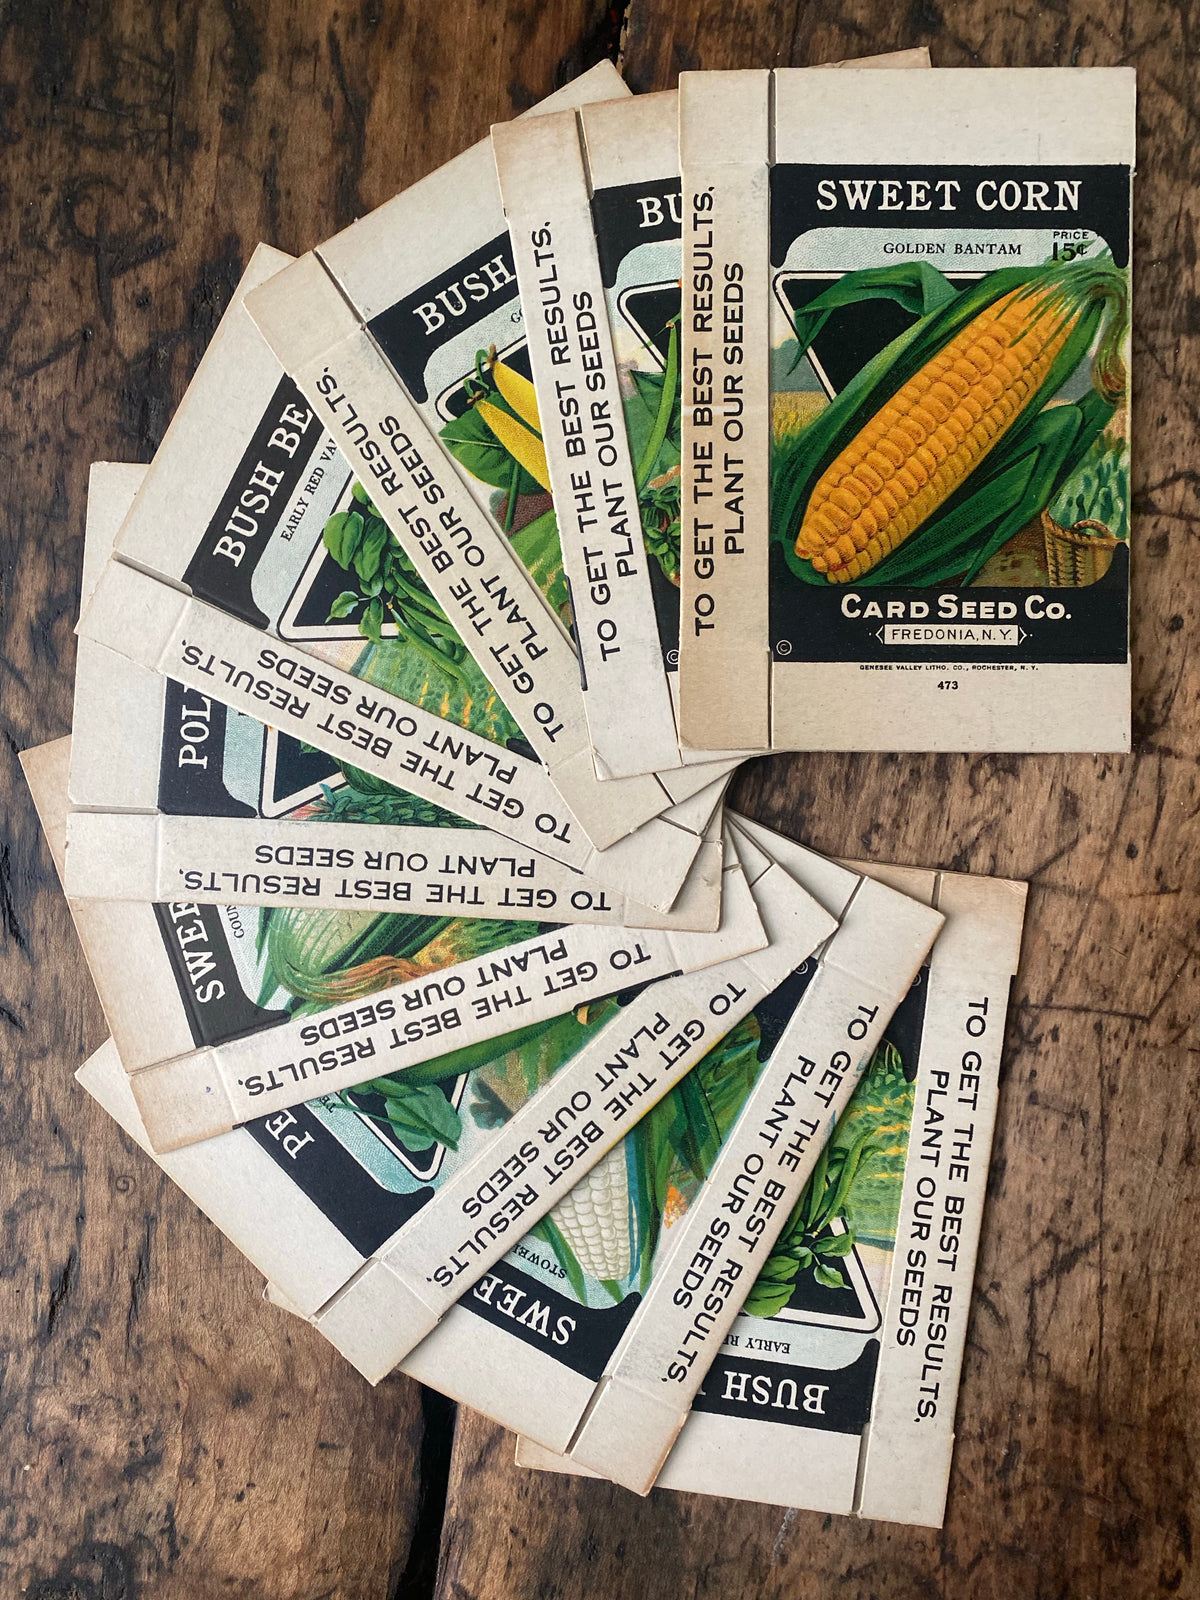 Vintage Sweet Corn Seed Box